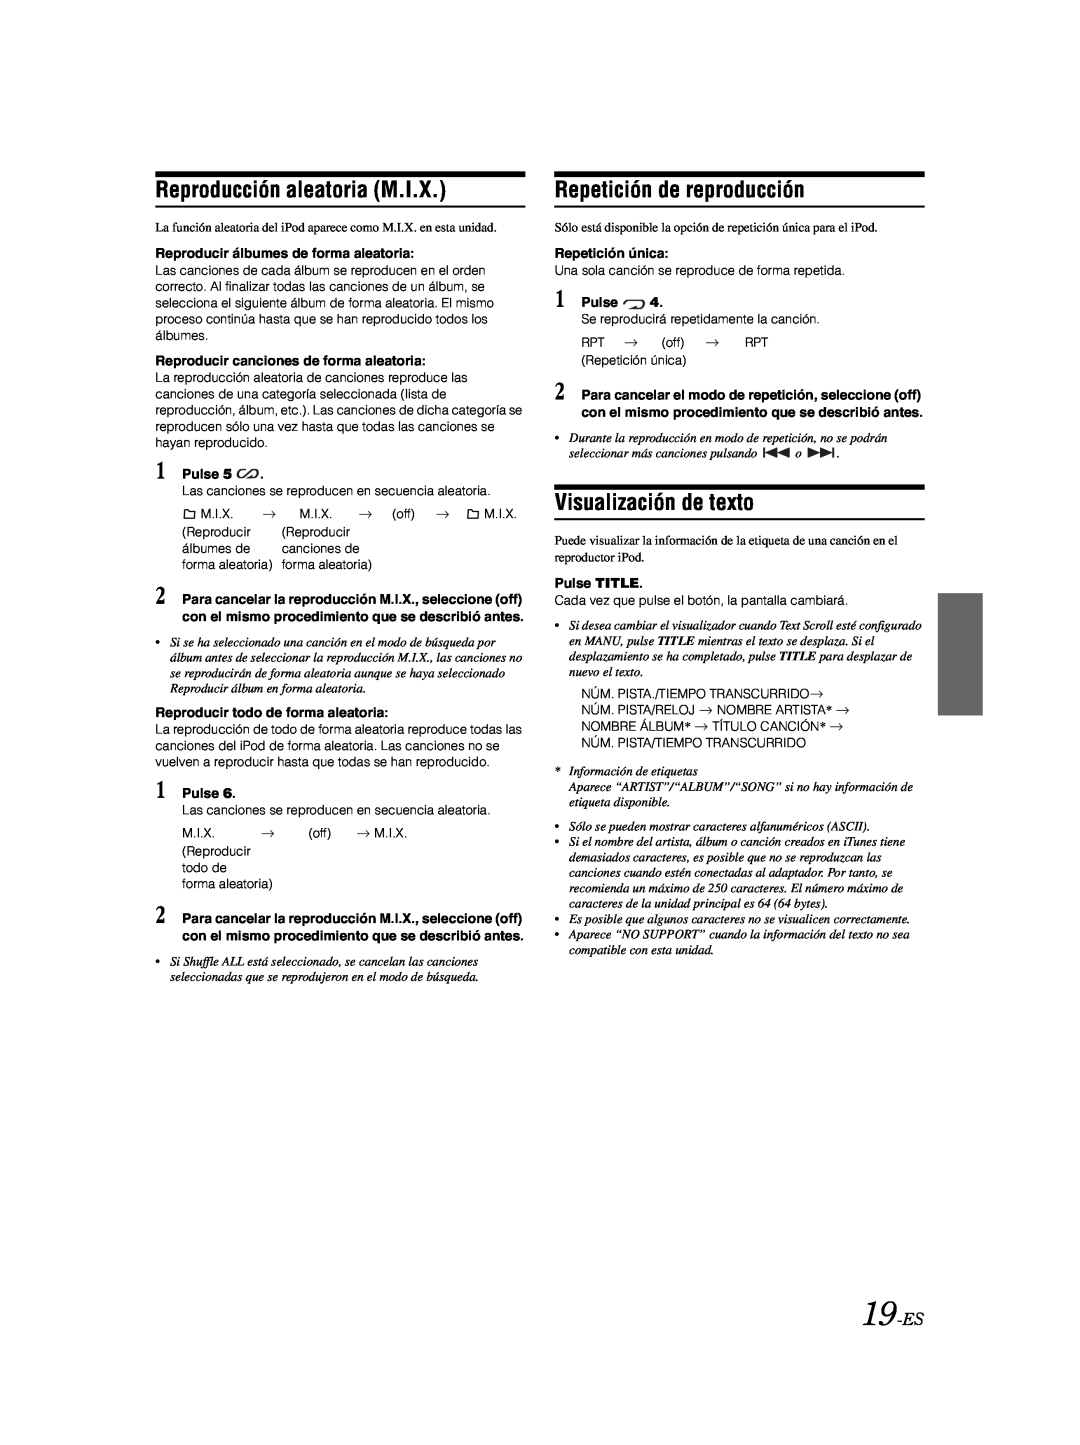 Alpine CDE-9881 owner manual Reproducción aleatoria M.I.X, 19-ES, Repetición de reproducción, Visualización de texto 